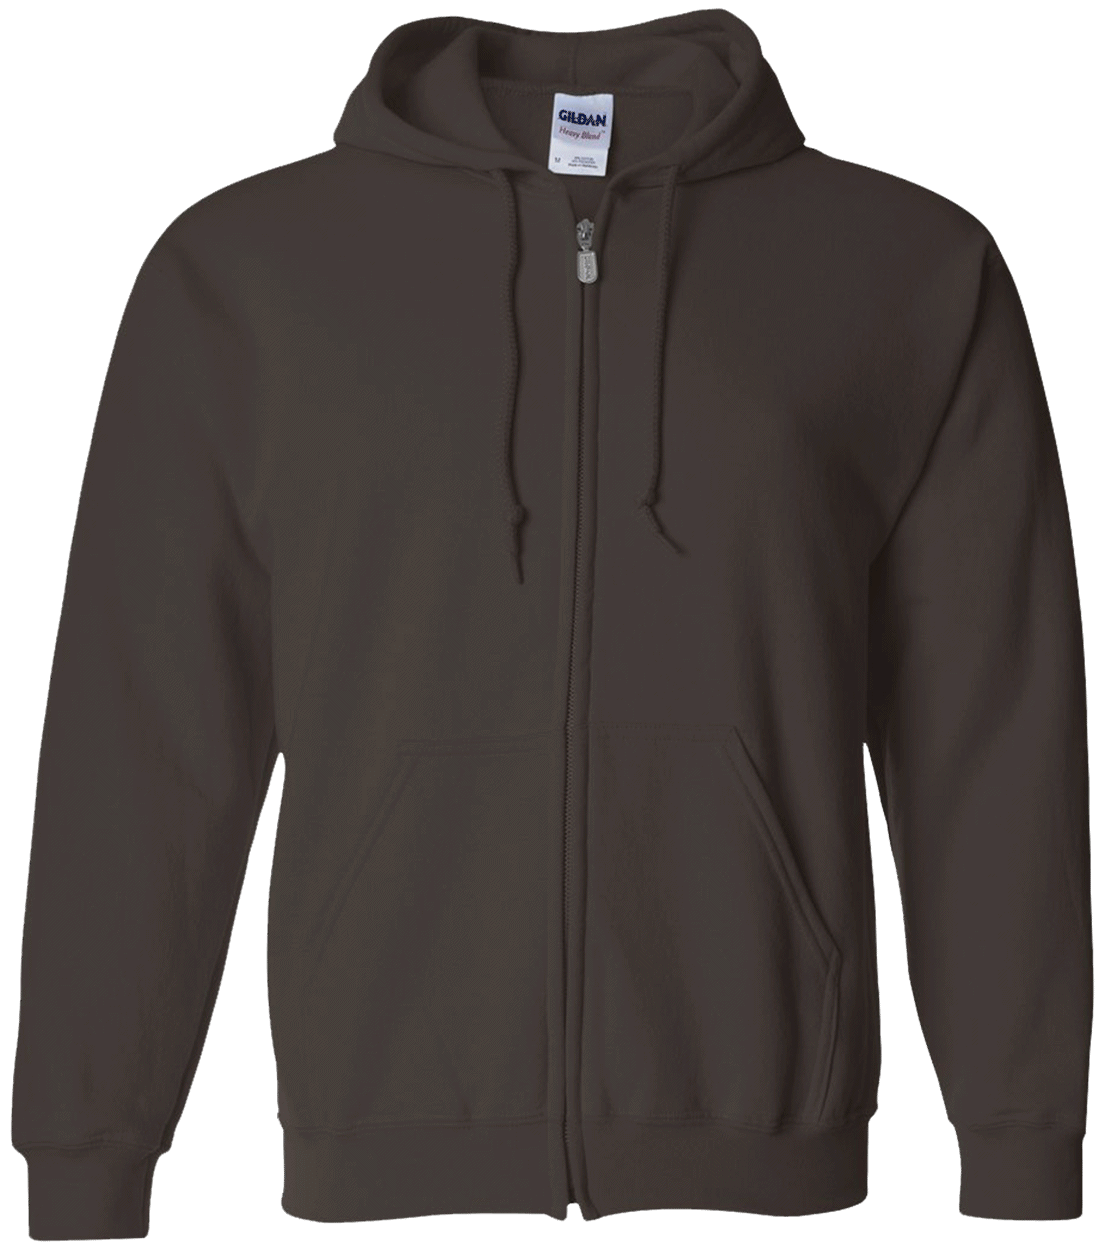 G186 Zip Up Hooded Sweatshirt - CustomCat